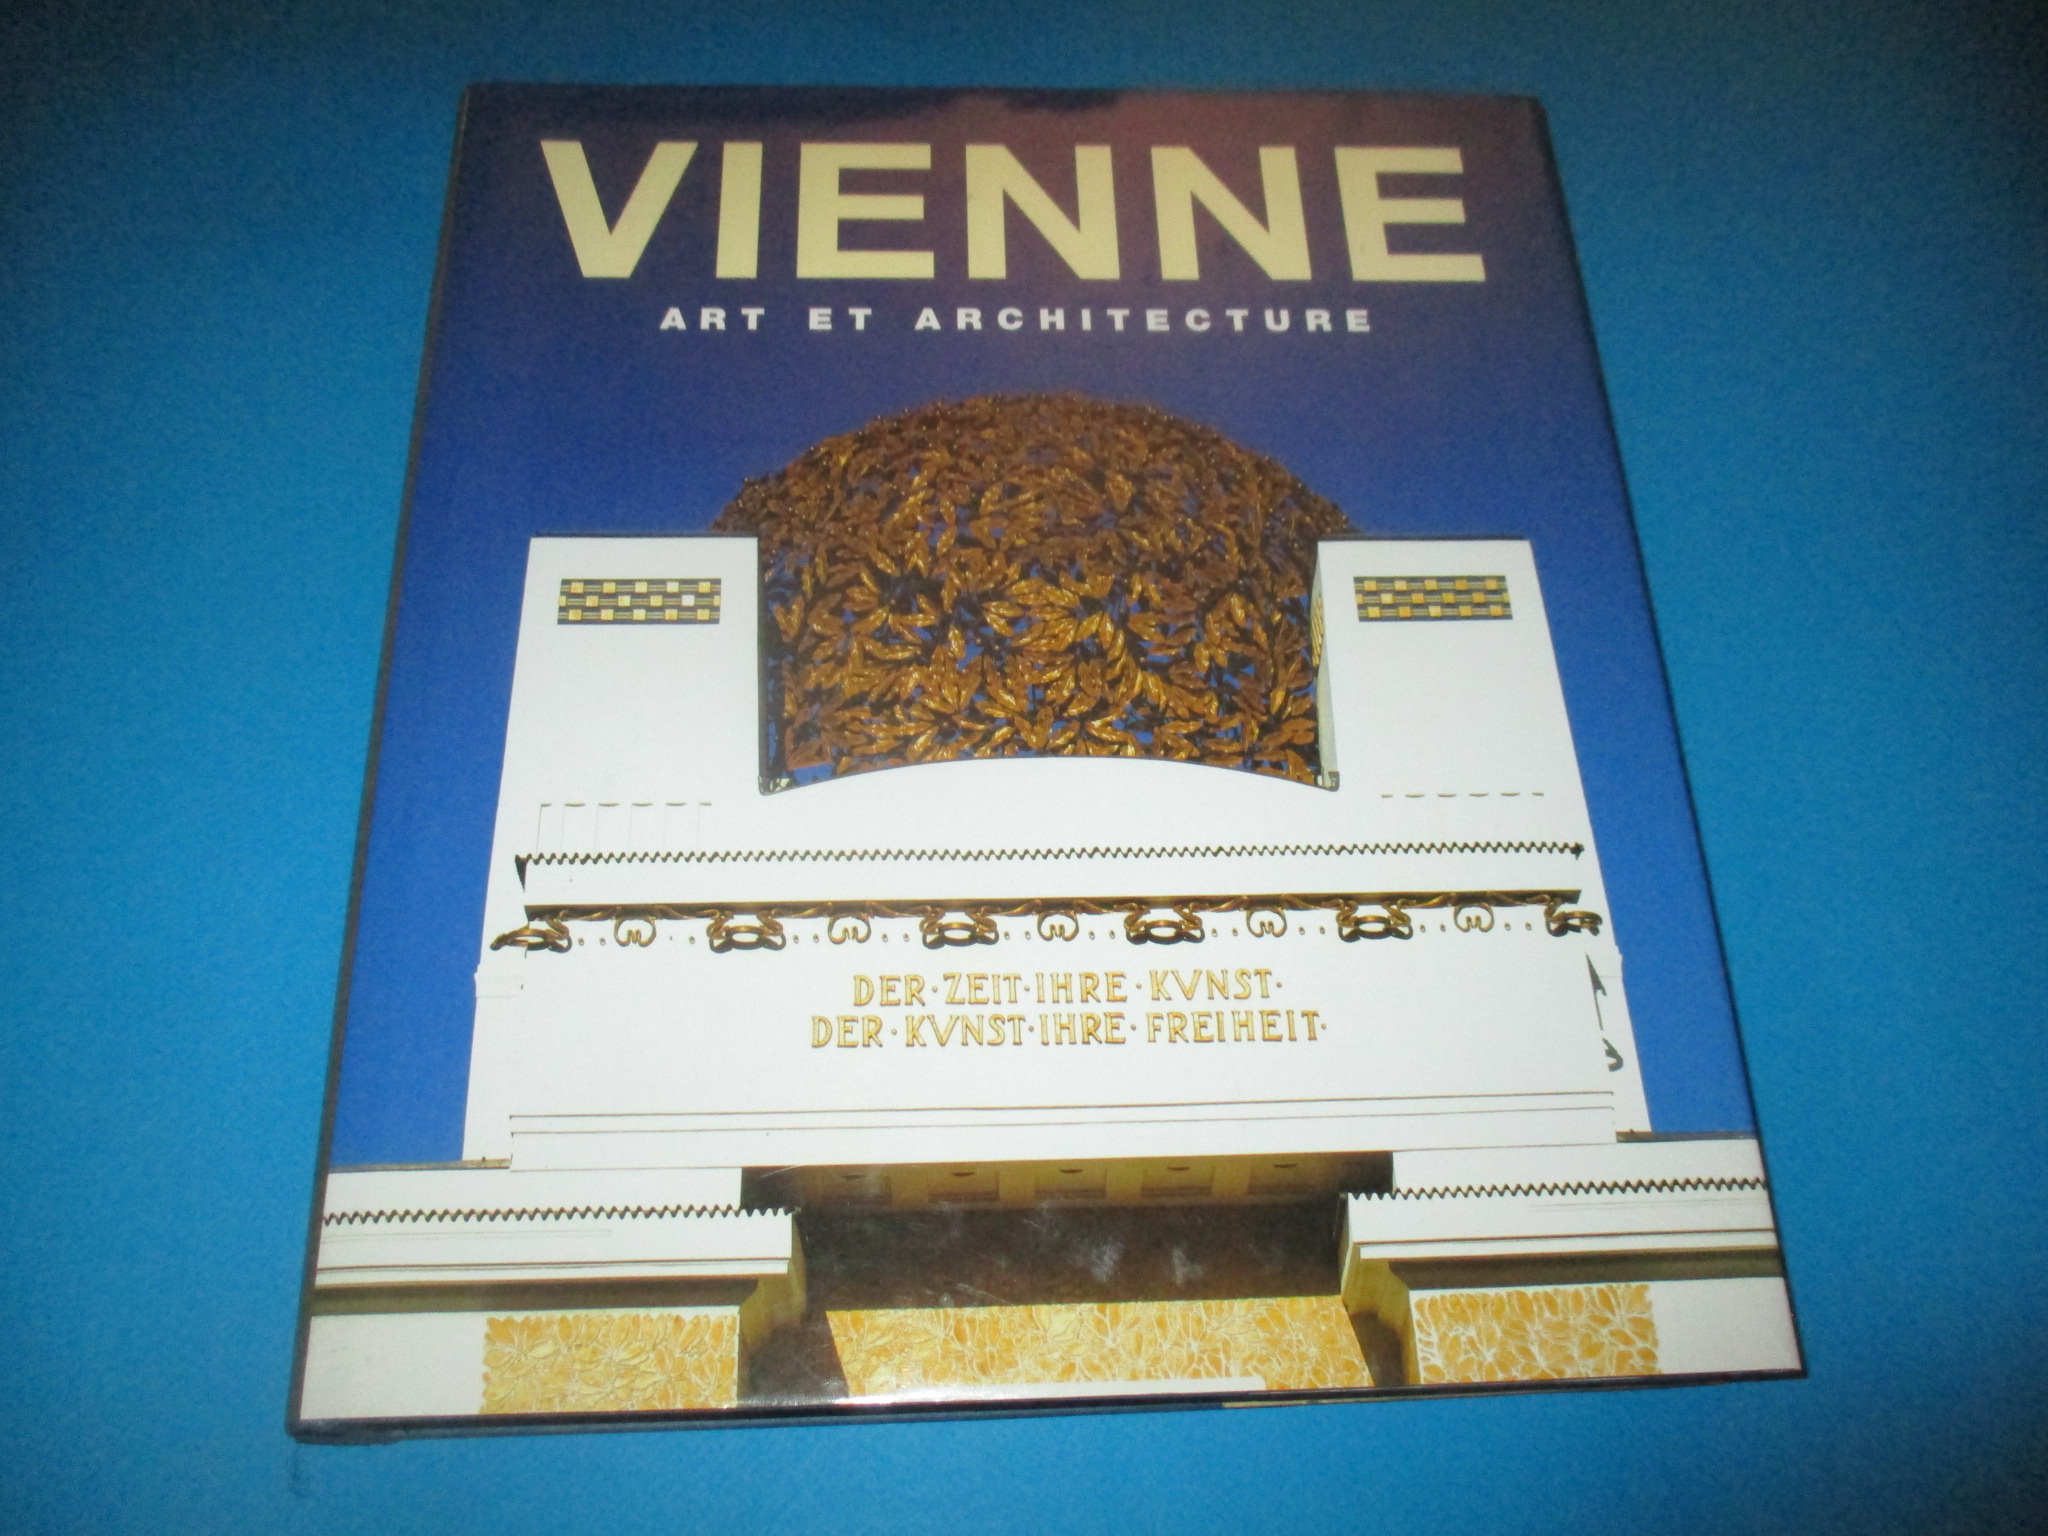 Vienne Art et Architecture, Rolf Toman, Gerald Zugmann & Achim Bednorz, Konemann